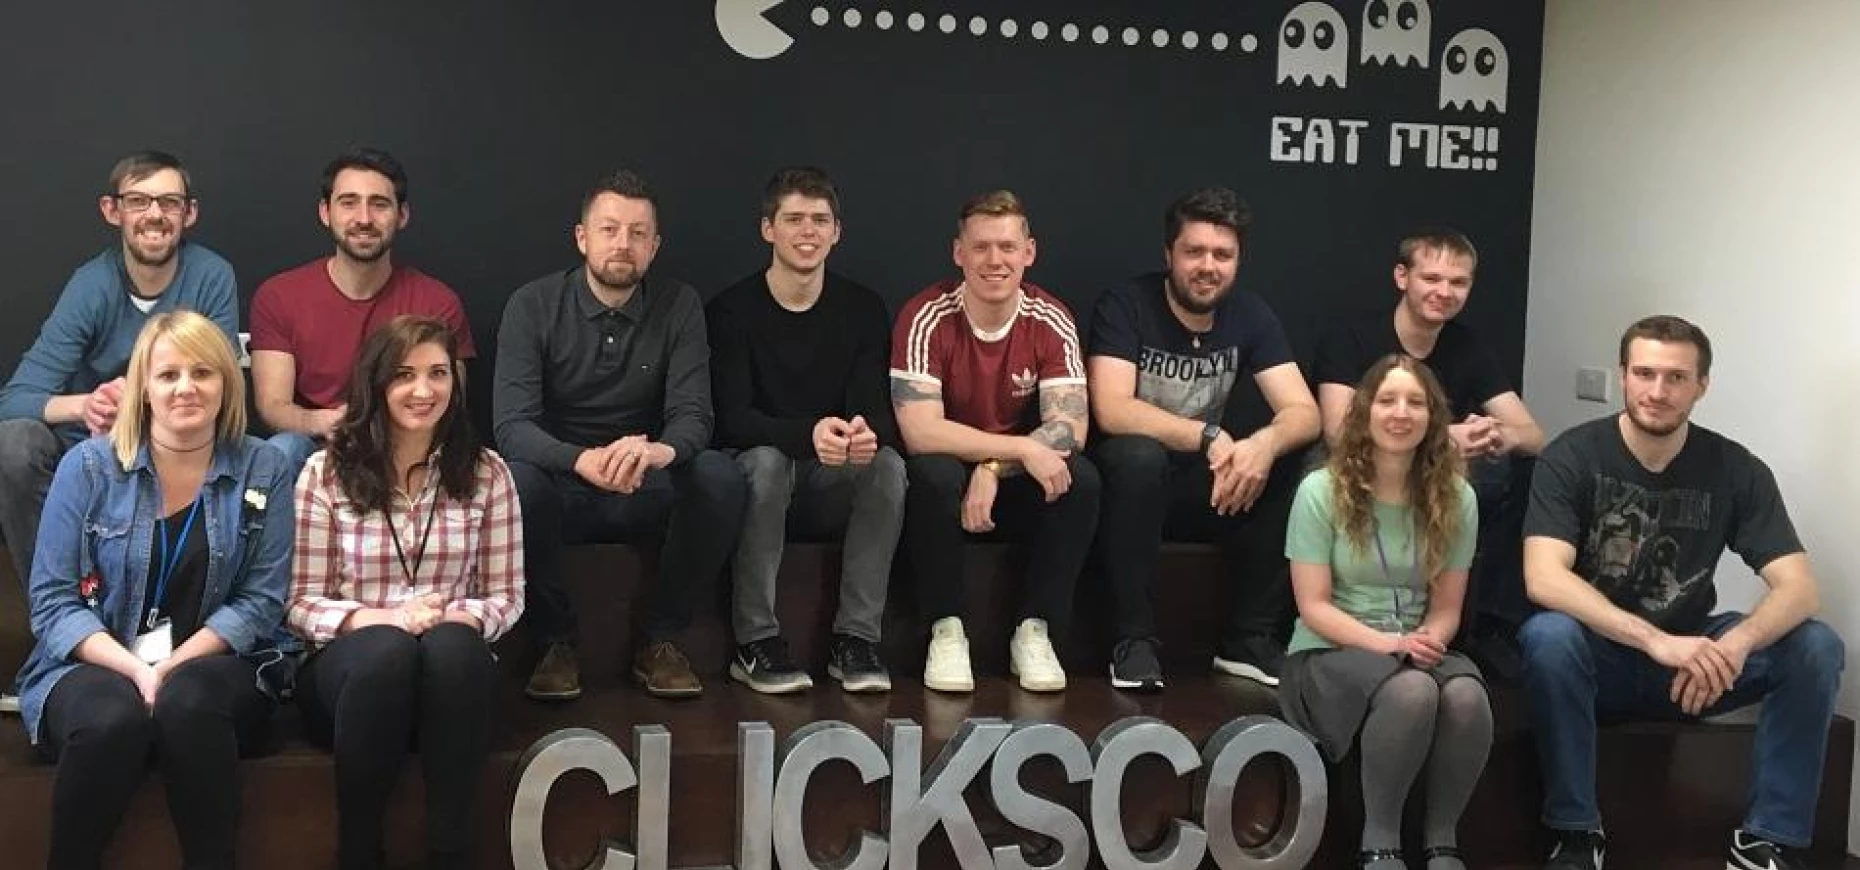 Clicksco Team